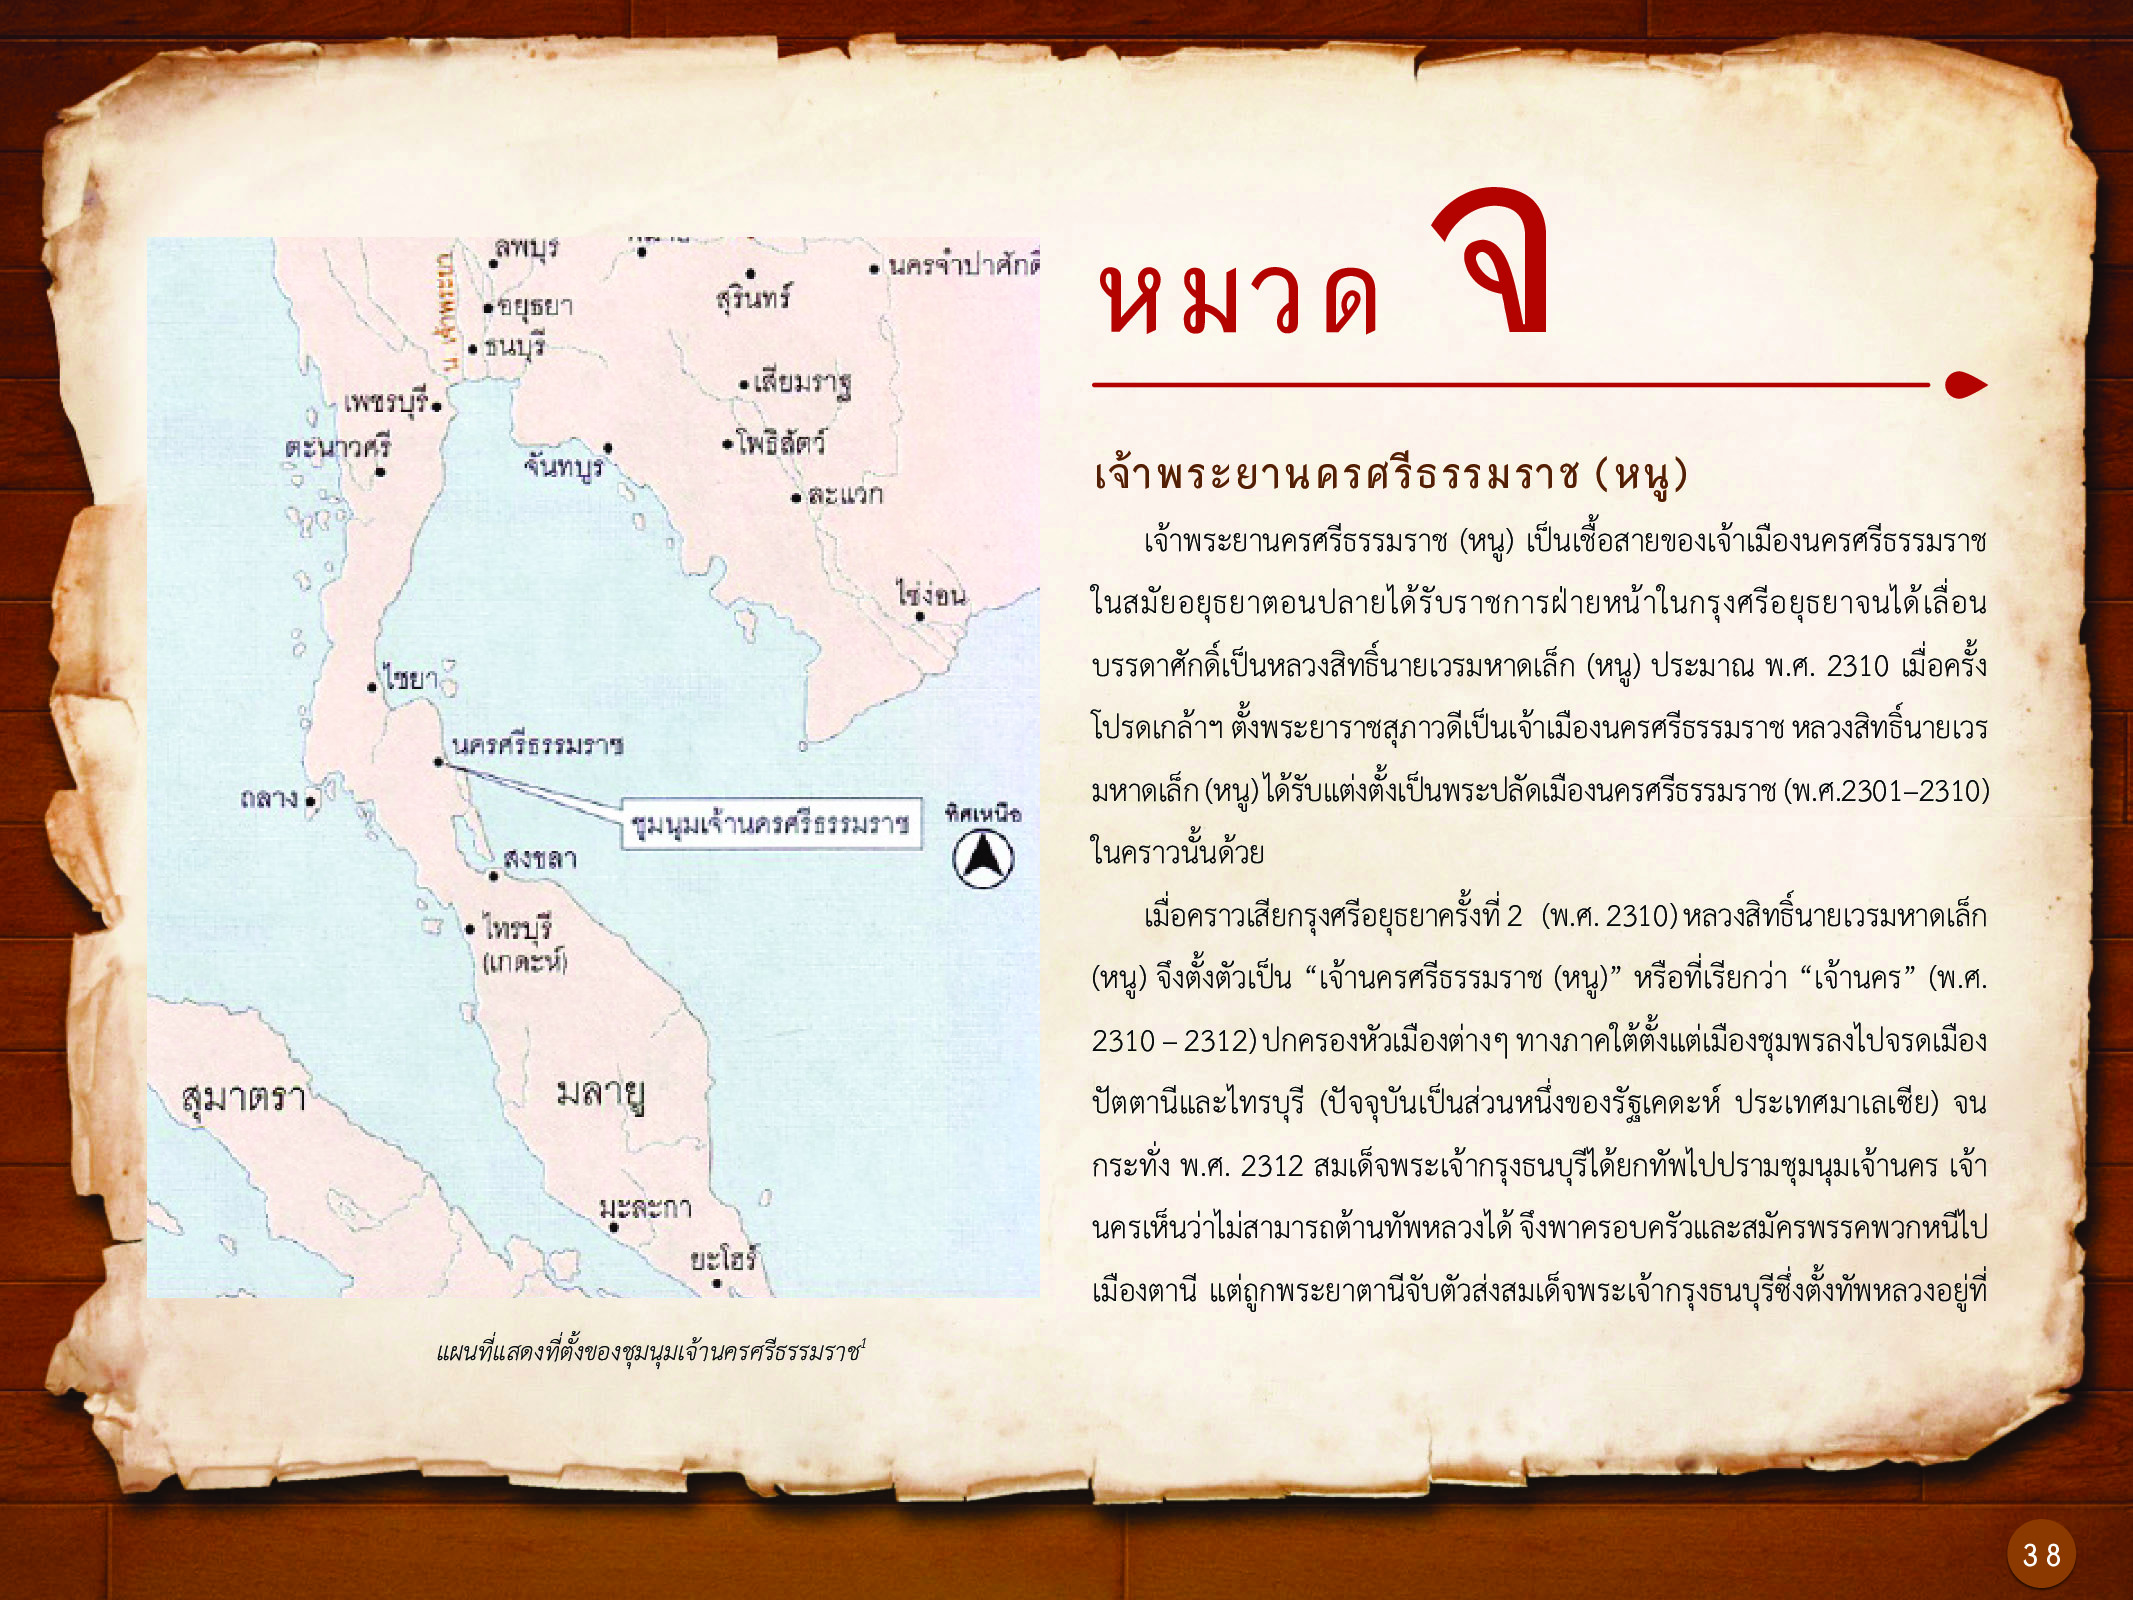 ประวัติศาสตร์กรุงธนบุรี ./images/history_dhonburi/38.jpg